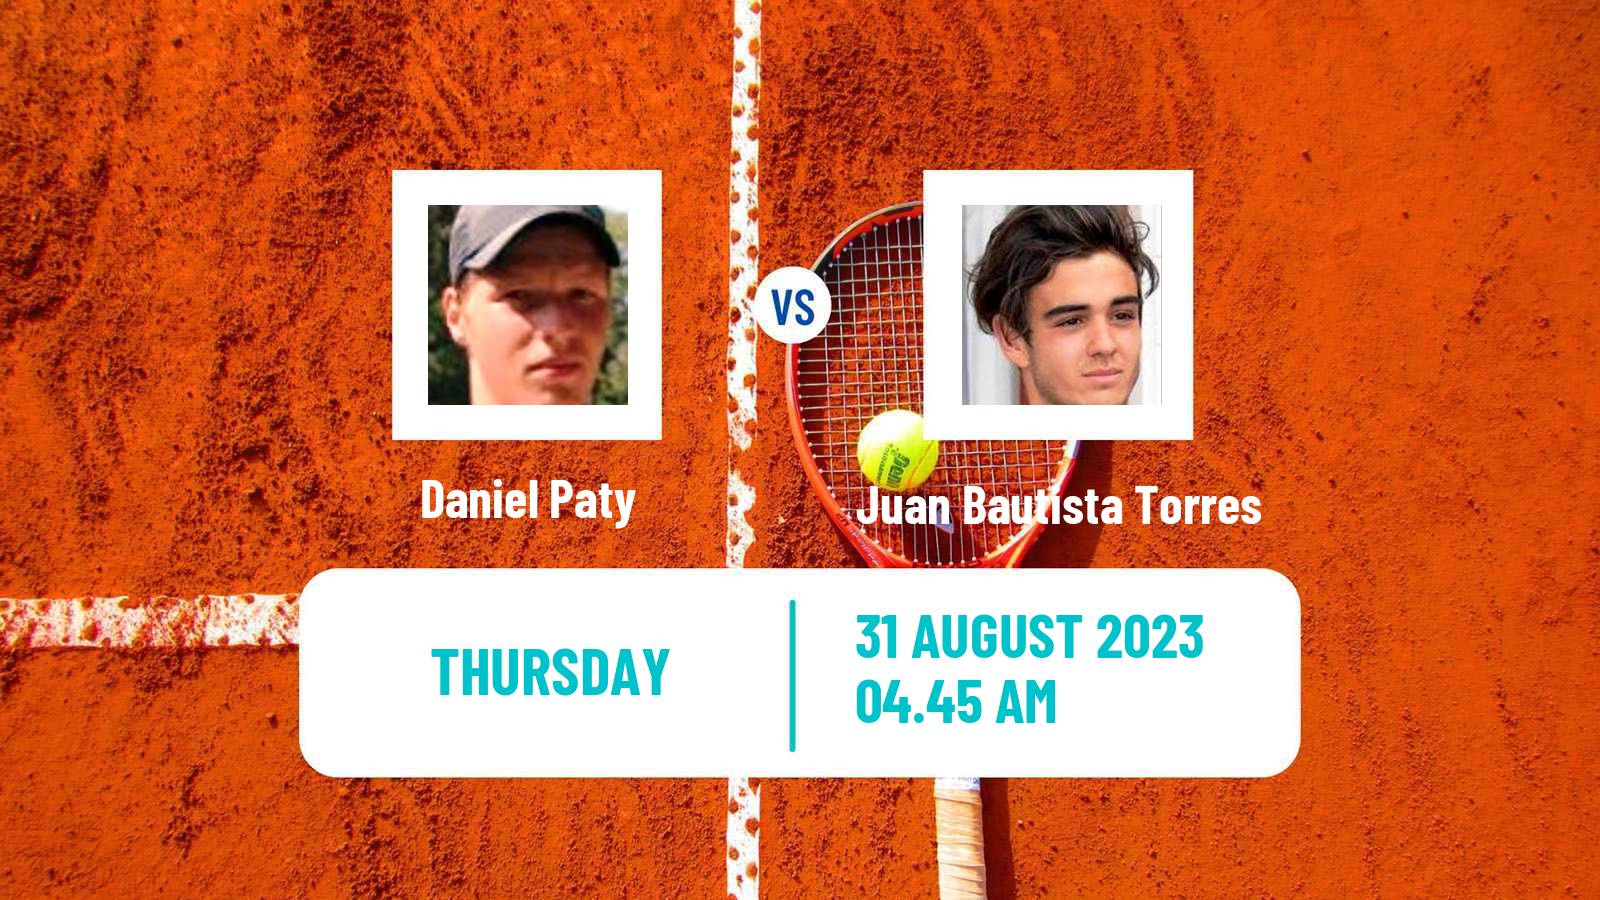 Tennis ITF M25 Jablonec Nad Nisou 2 Men Daniel Paty - Juan Bautista Torres